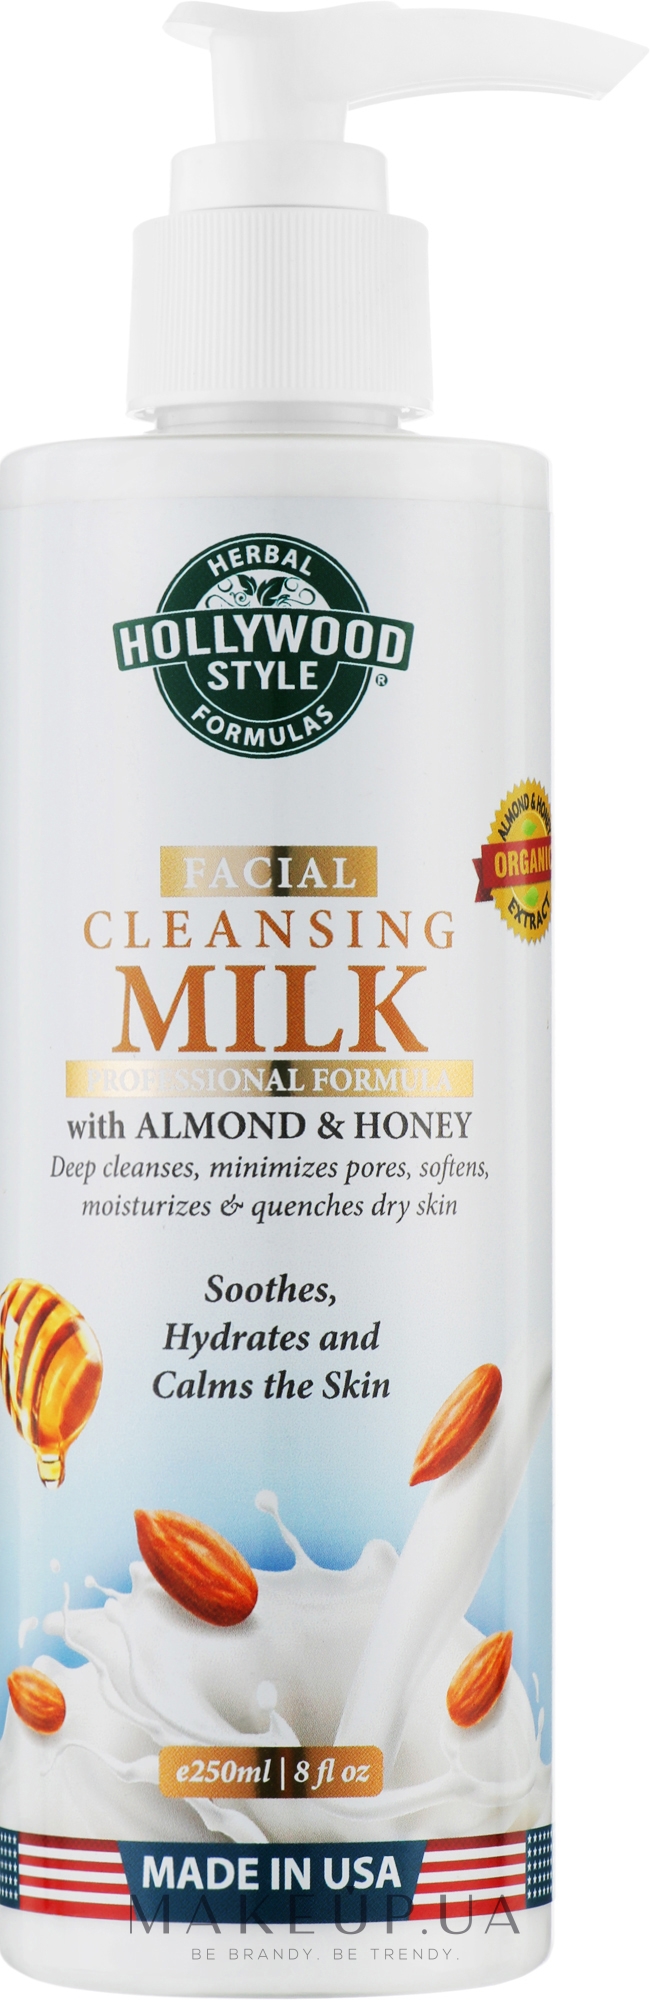 Молочко для глубокого очищения лица - Hollywood Style Facial Cleansing Milk — фото 250ml